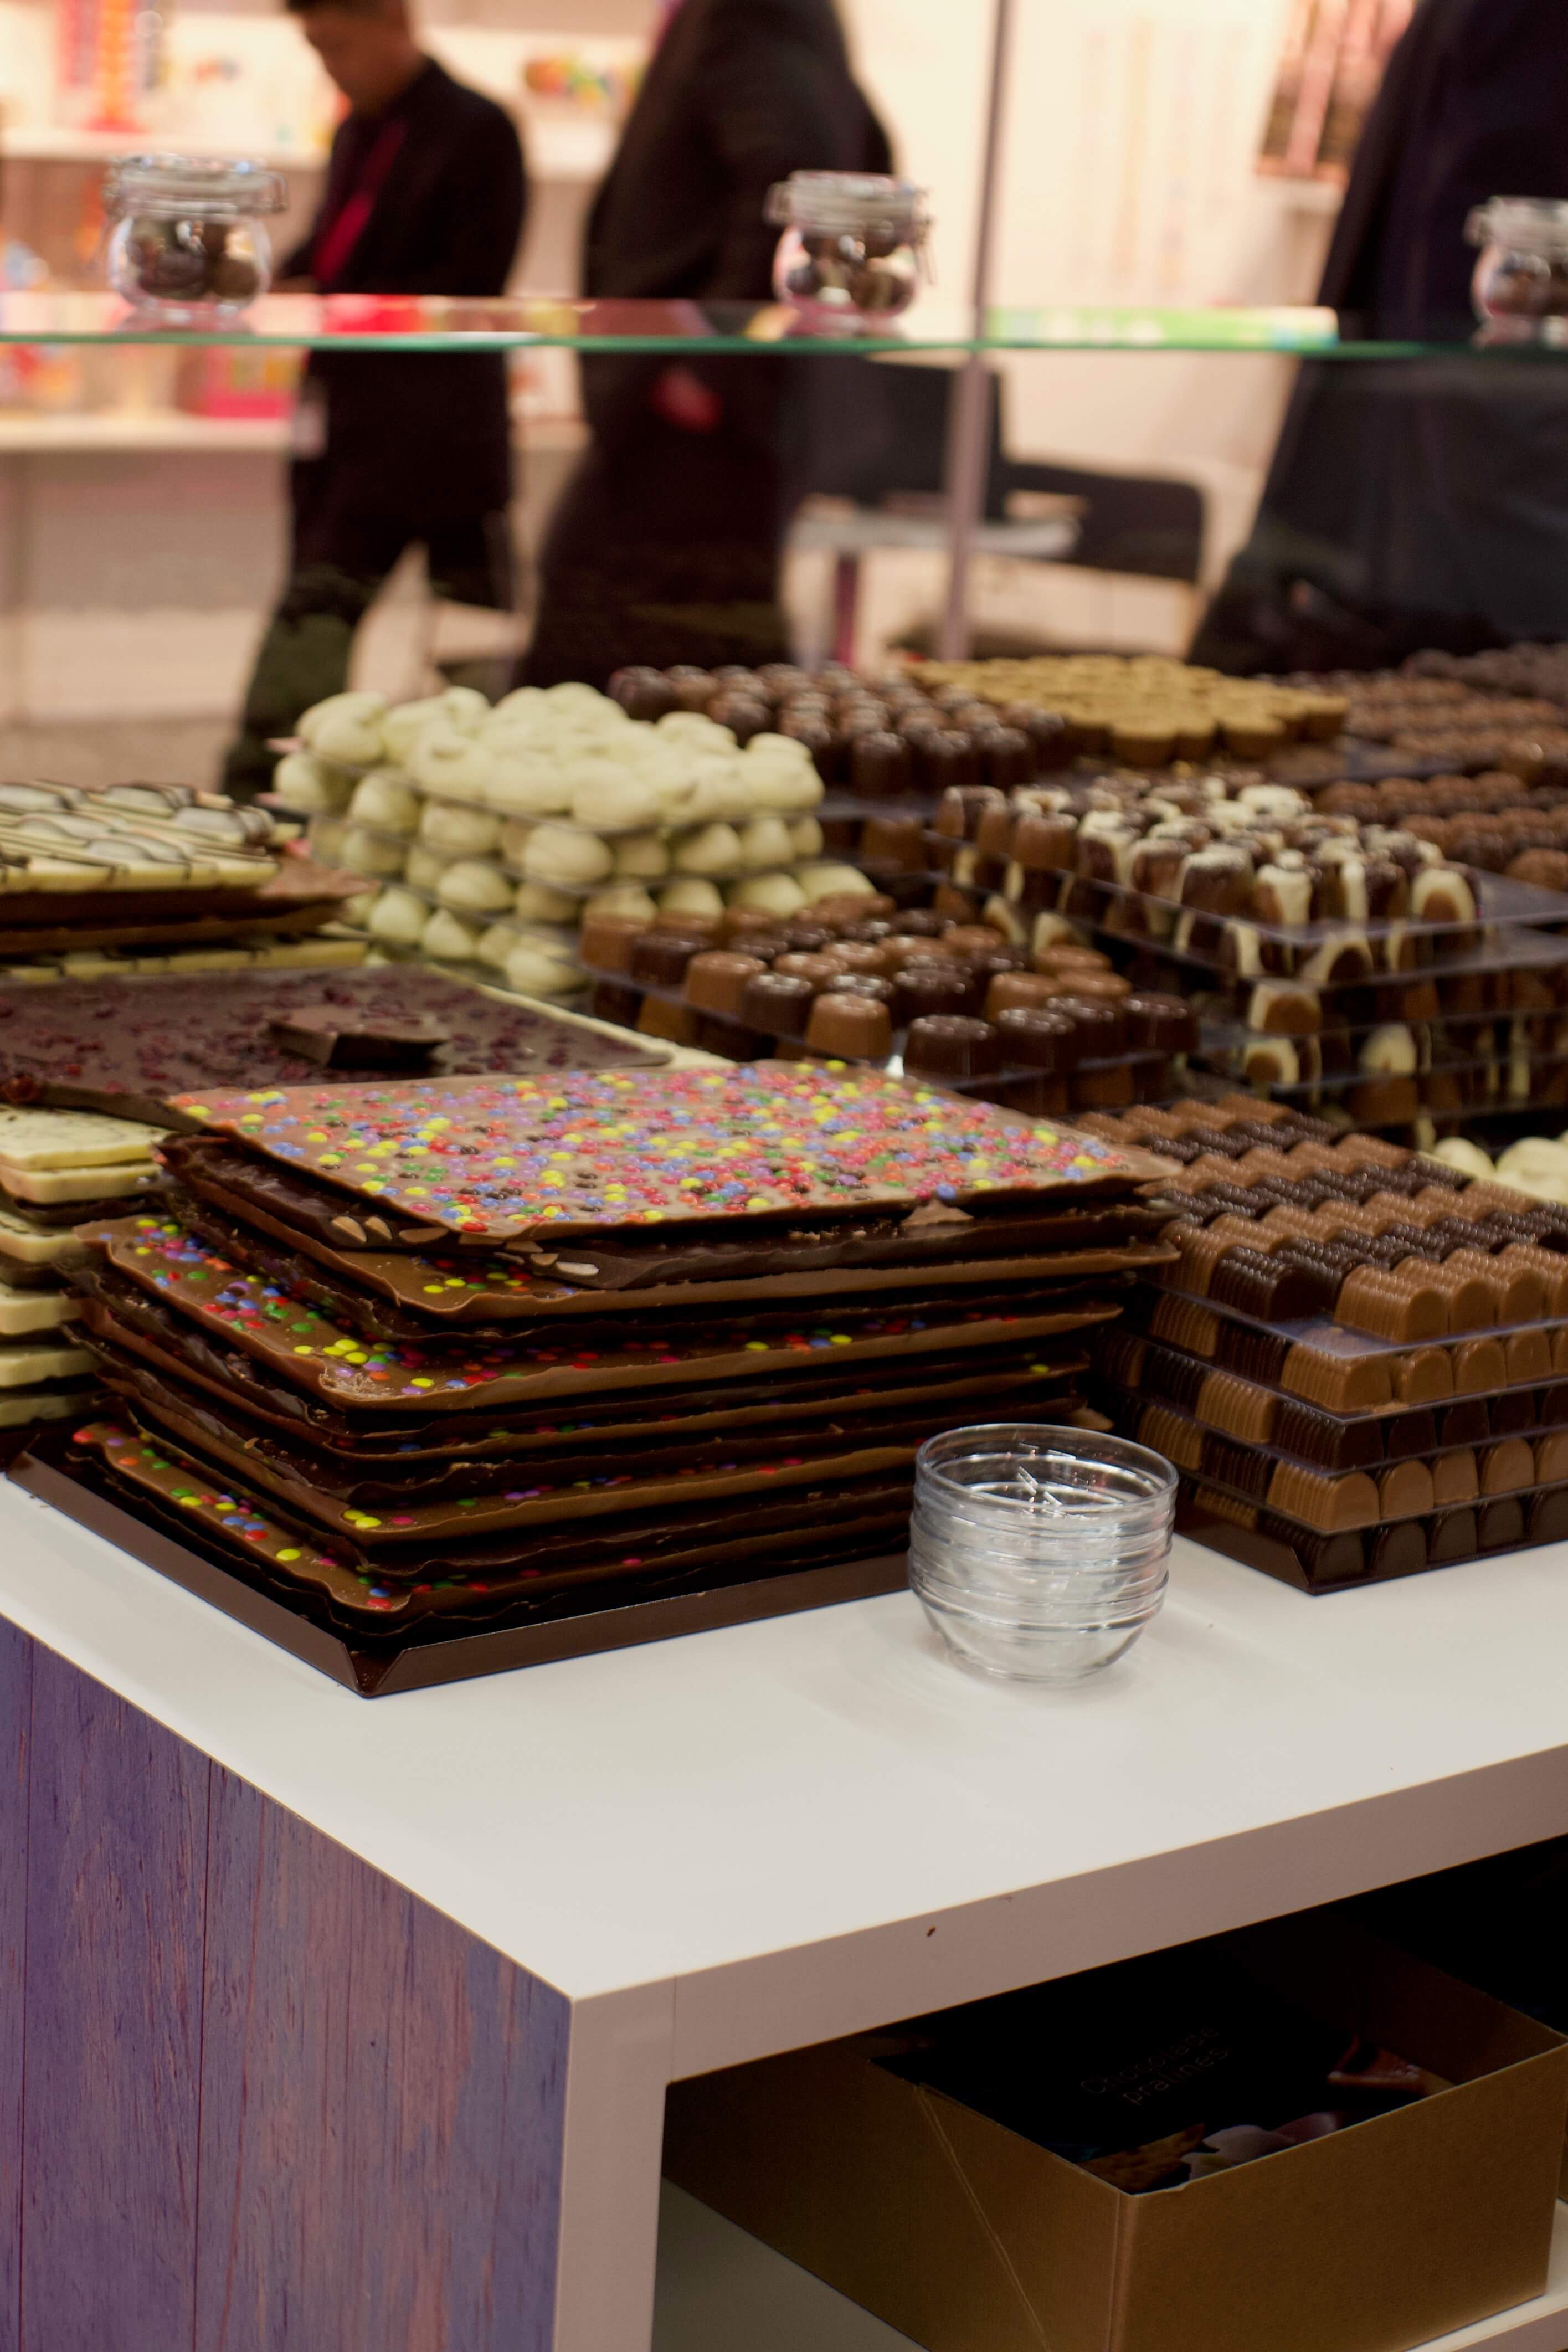 Ein Tag auf der Süßwarenmesse ISM 2018 in Köln: süße Trends und zuckerfreie Zuckerwaren | Bericht